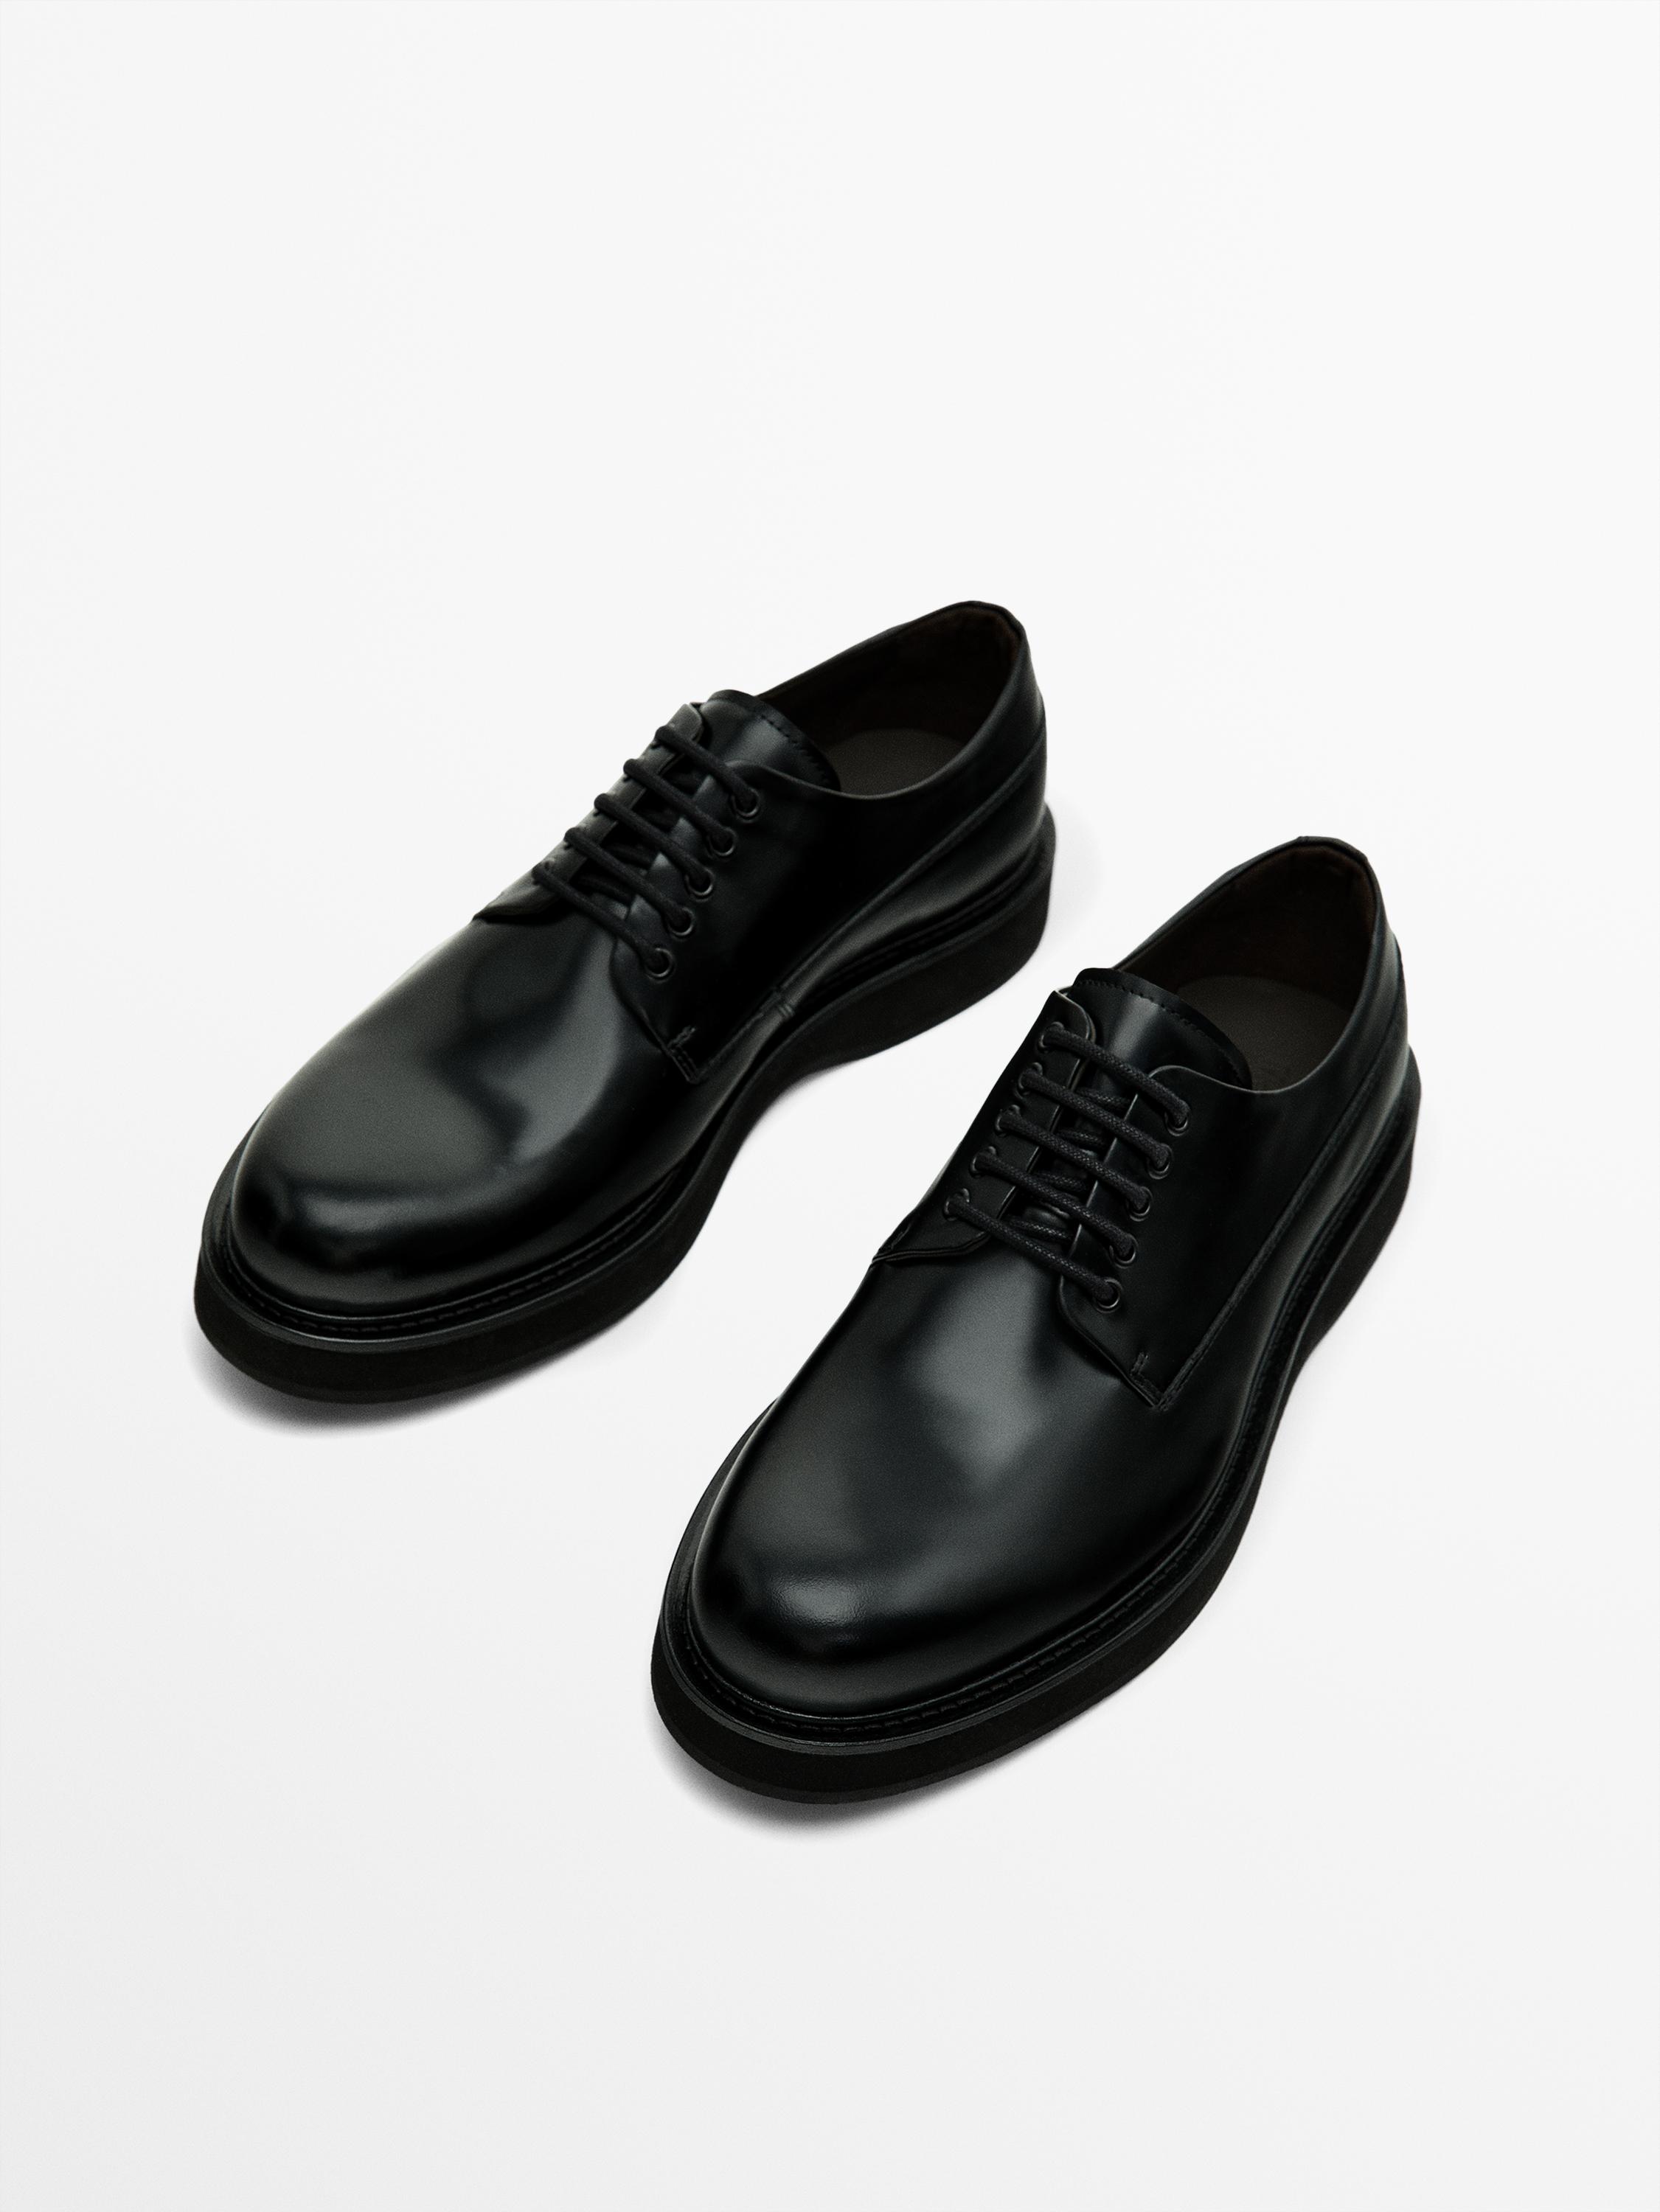 Black lace-up shoes - Black | ZARA United States